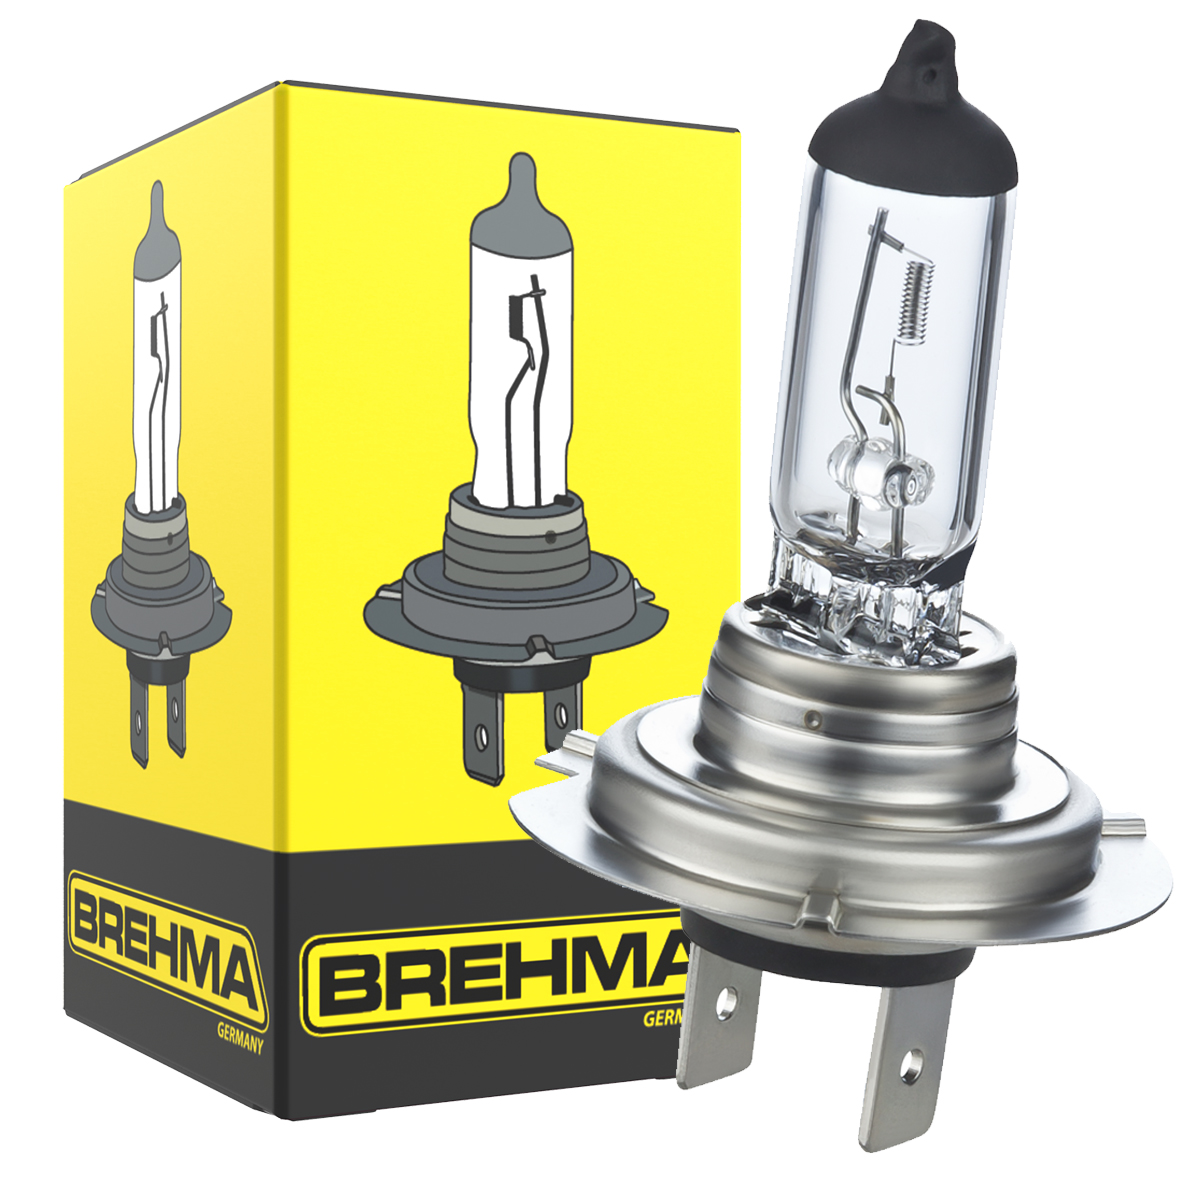 Auto-Lampen-Discount - H7 Lampen und mehr günstig kaufen - 2er Set BREHMA W5W  Standlicht Autolampen T10 12V 5W